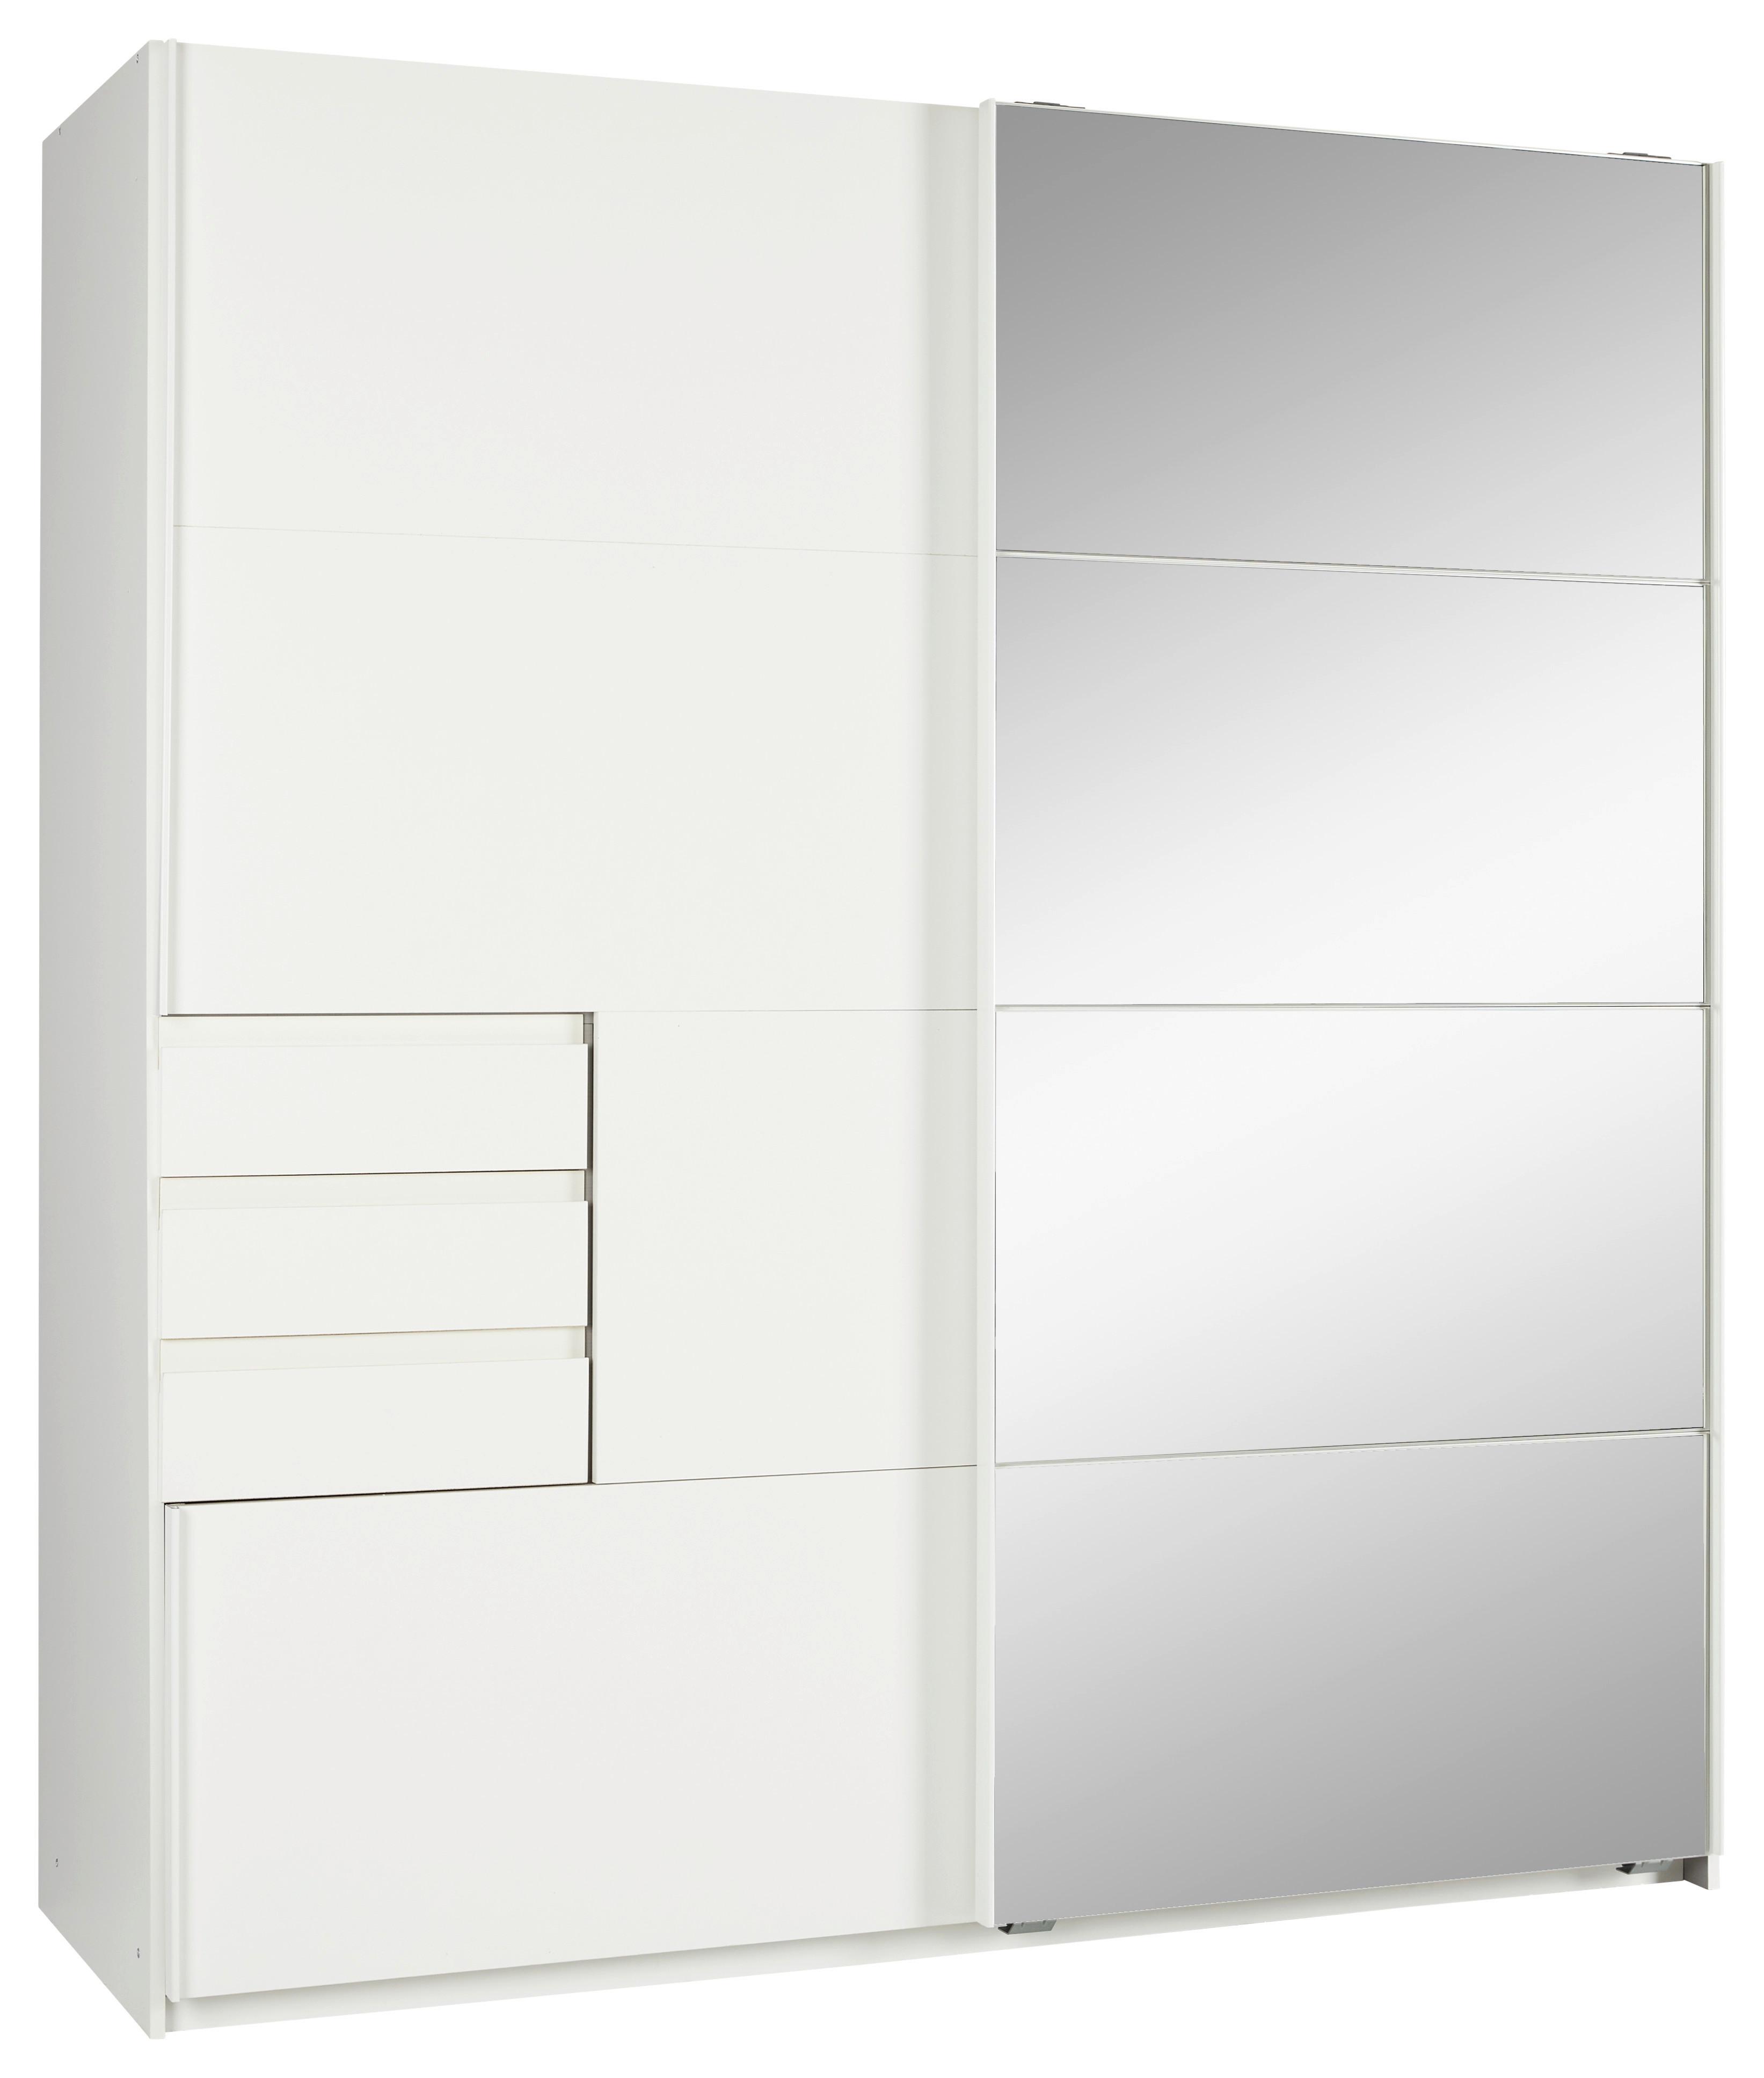 Schwebetürenschrank ca. 180x198x64cm - Weiß, KONVENTIONELL, Holzwerkstoff/Kunststoff (180/198/64cm) - Modern Living